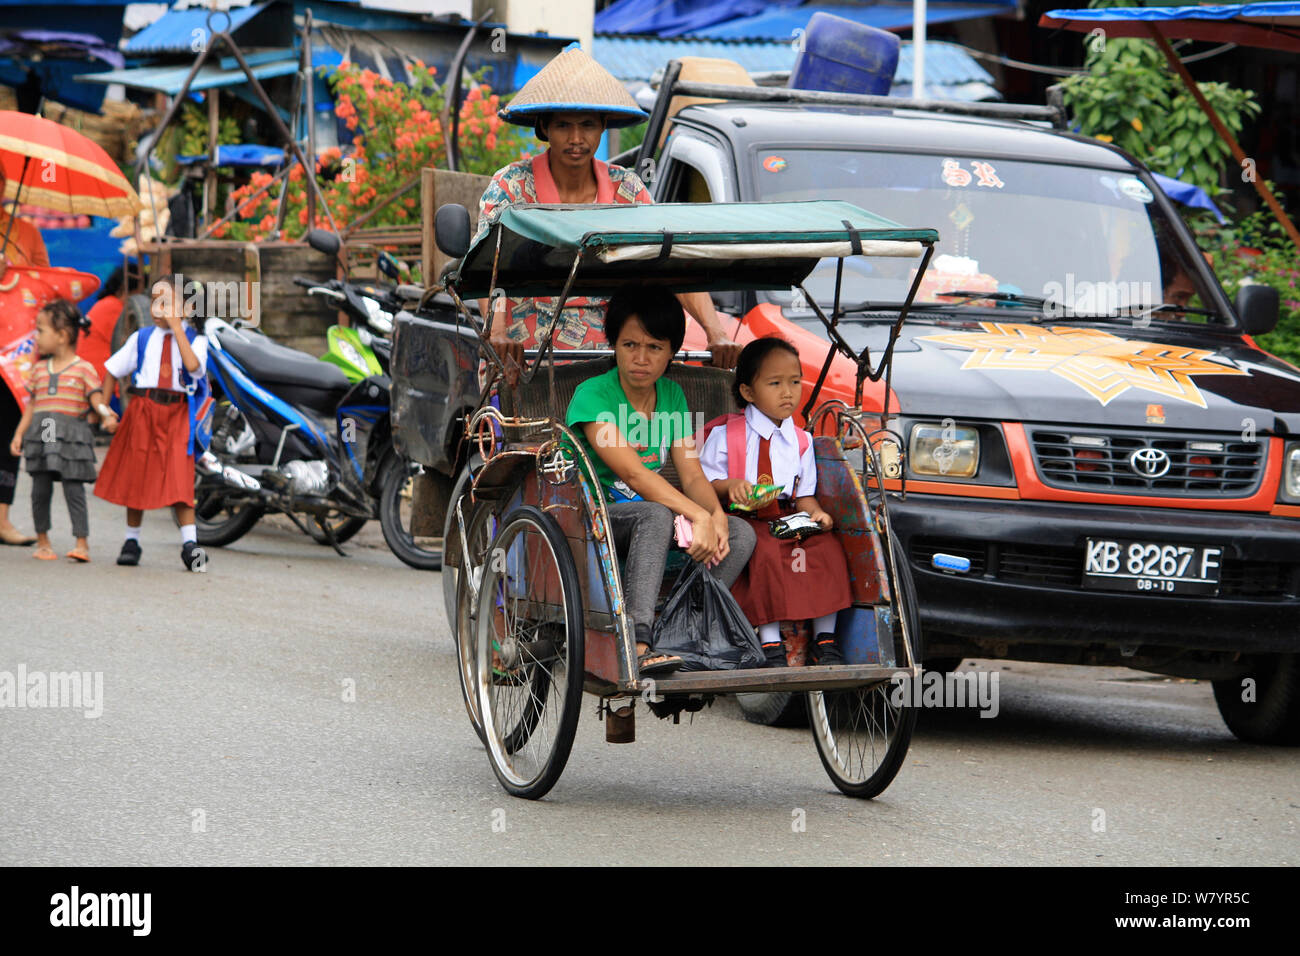 Fahrrad Rikscha, singkawang Stadt. West Kalimantan, indonesische Borneo. Juli 2010. Stockfoto